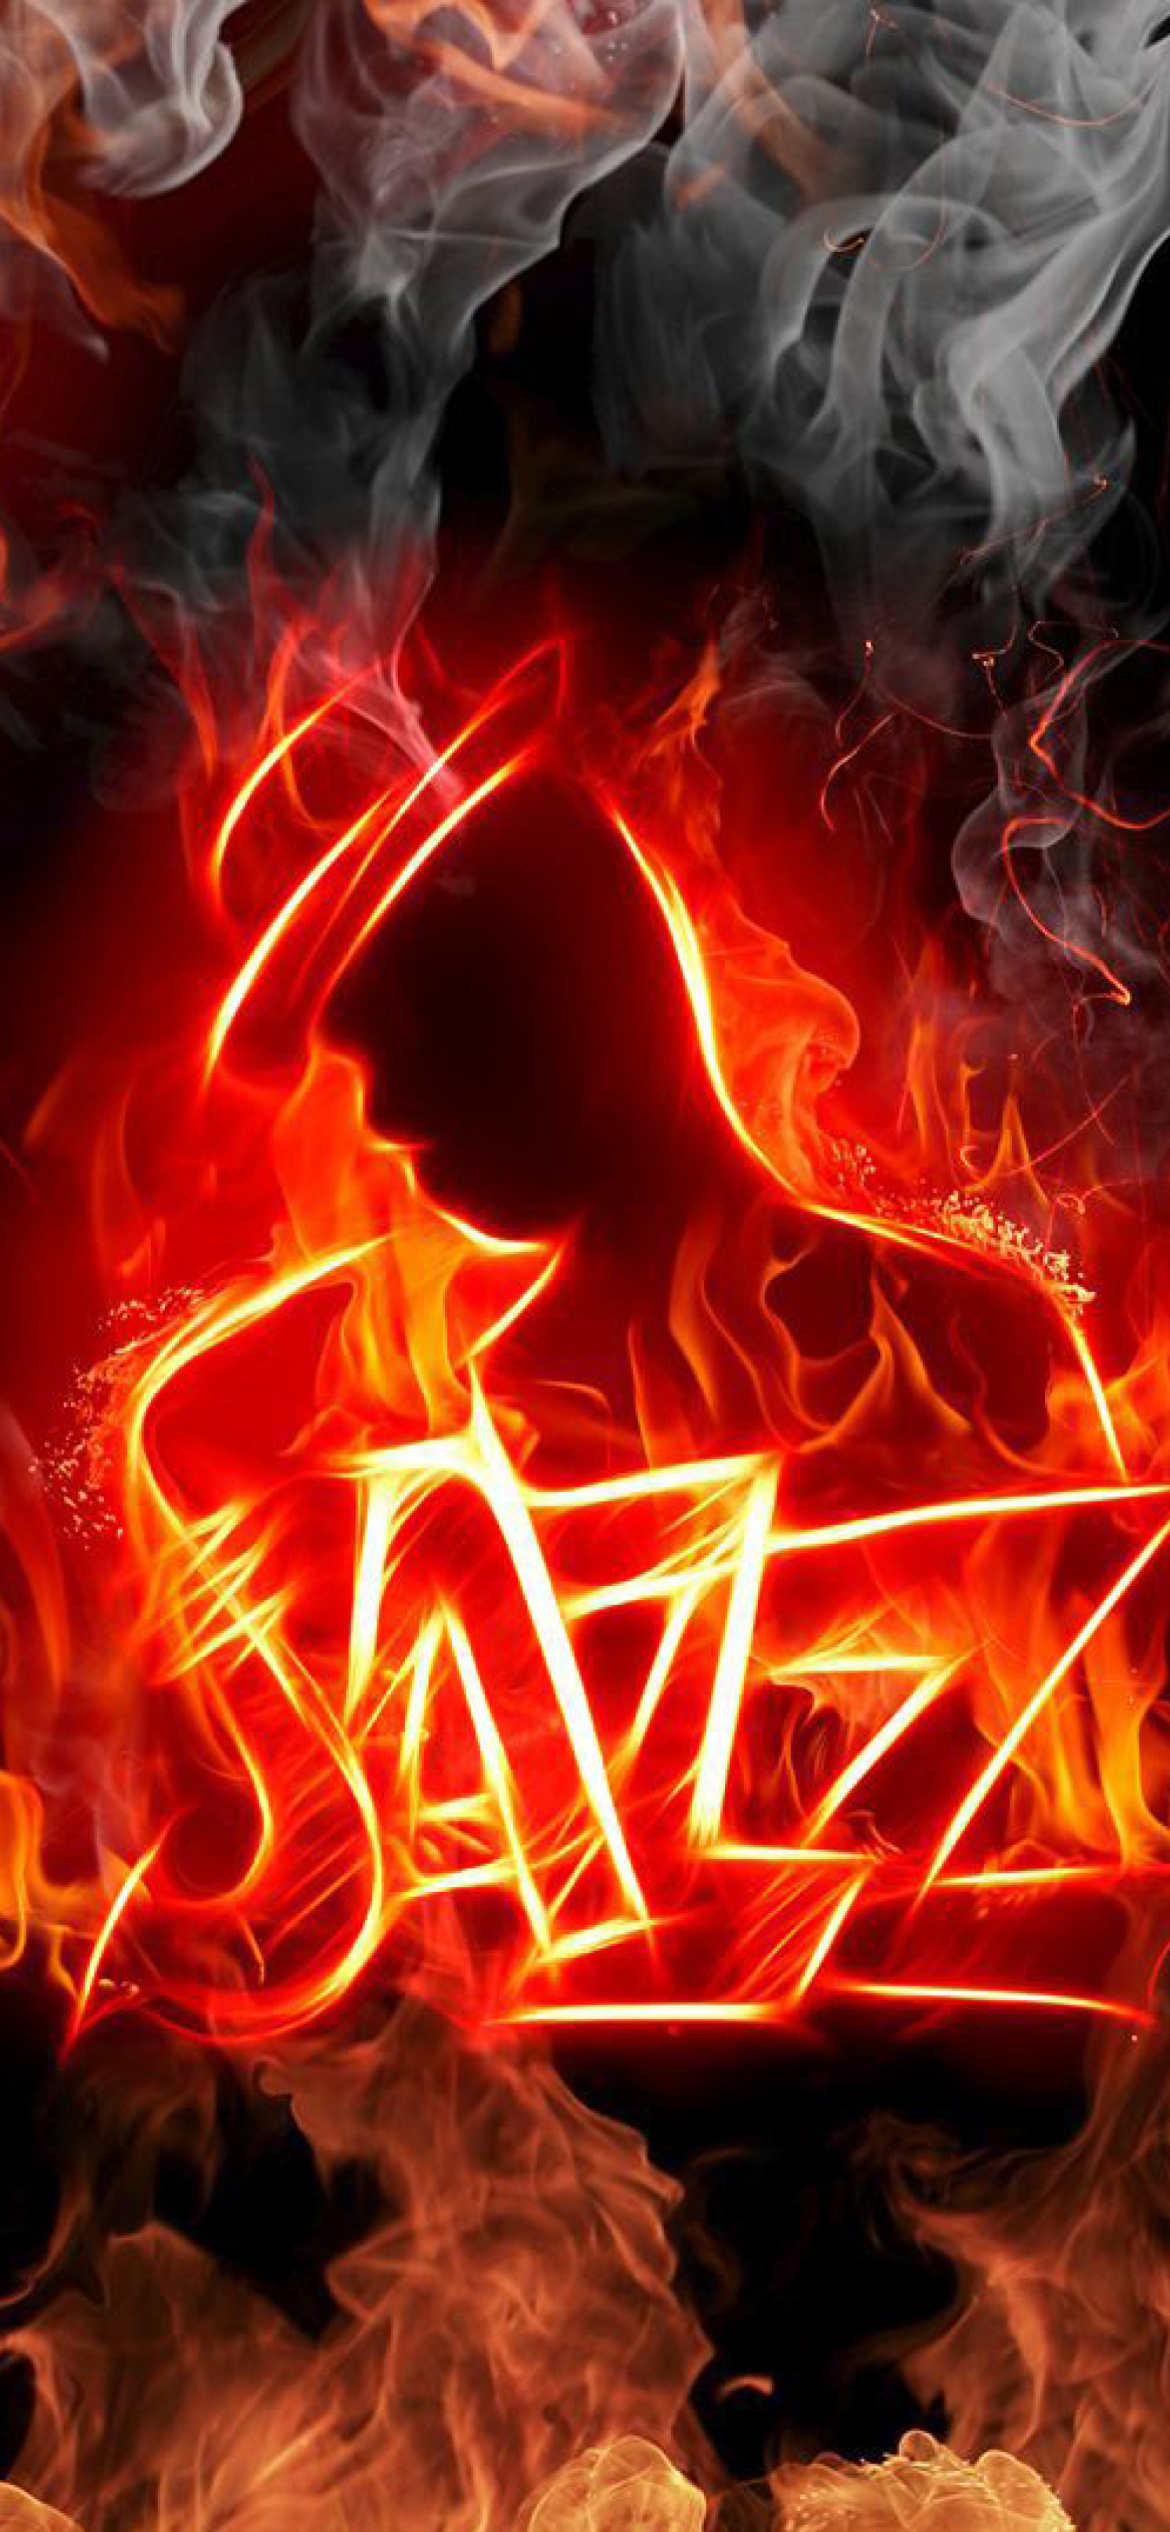 Das Jazz Fire HD Wallpaper 1170x2532